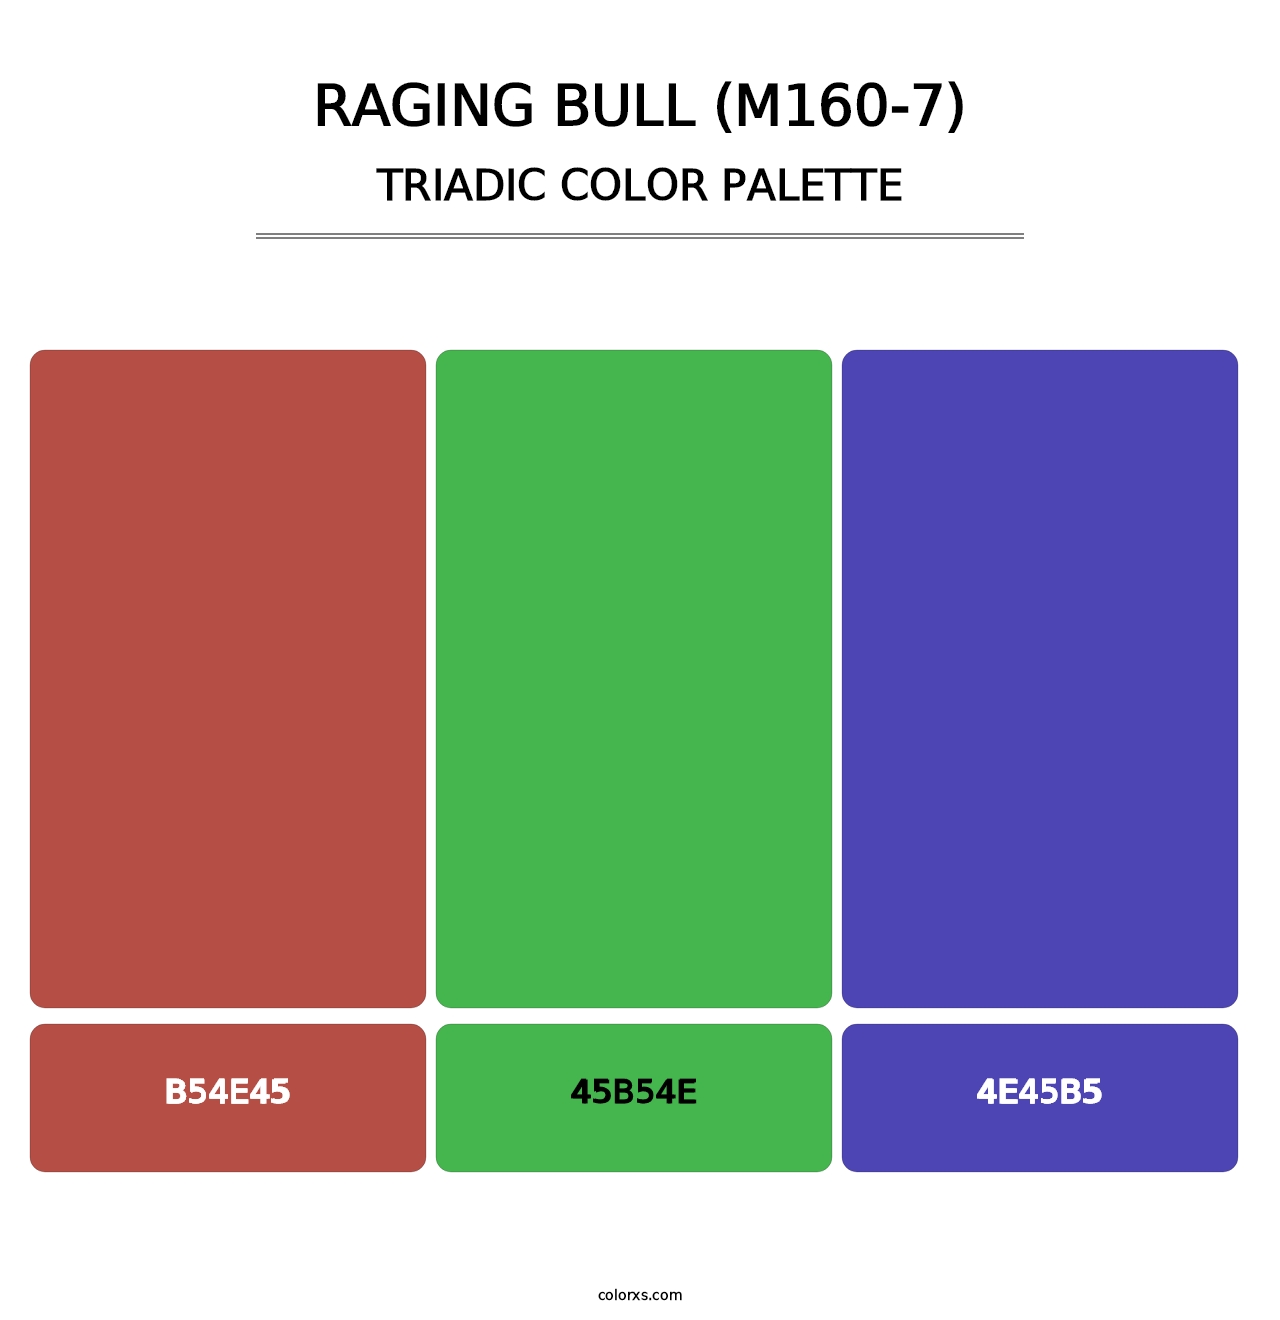 Raging Bull (M160-7) - Triadic Color Palette